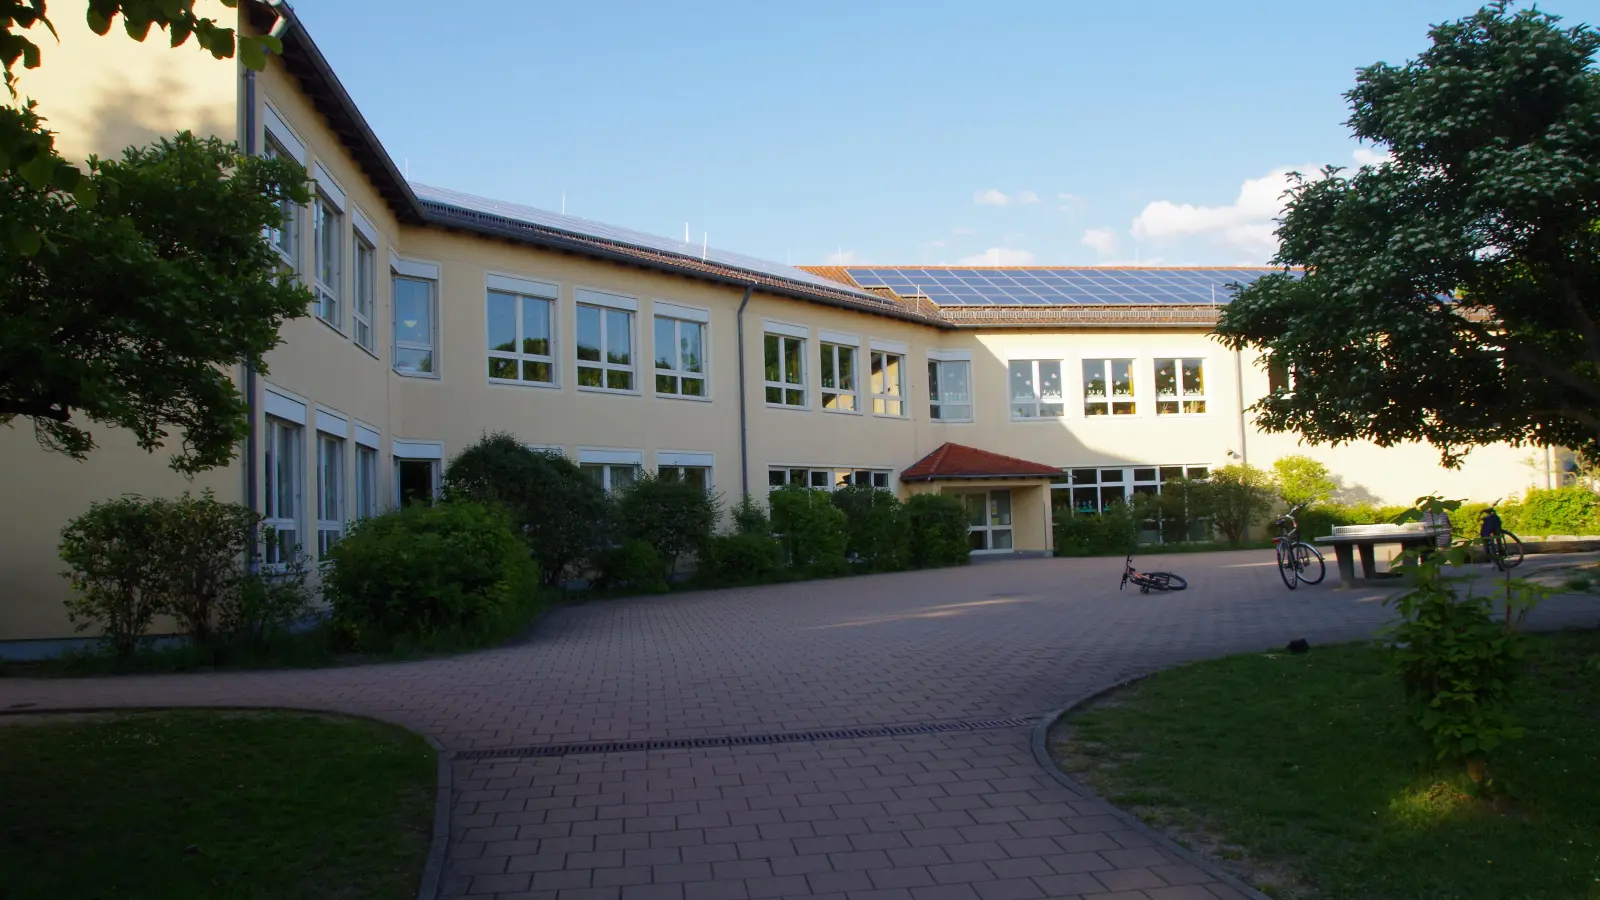 An der Schule in Colmberg wird ein Anbau erforderlich. Über die Möglichkeiten machten sich die Gemeinderäte jetzt Gedanken. (Foto: Theo Clausen)